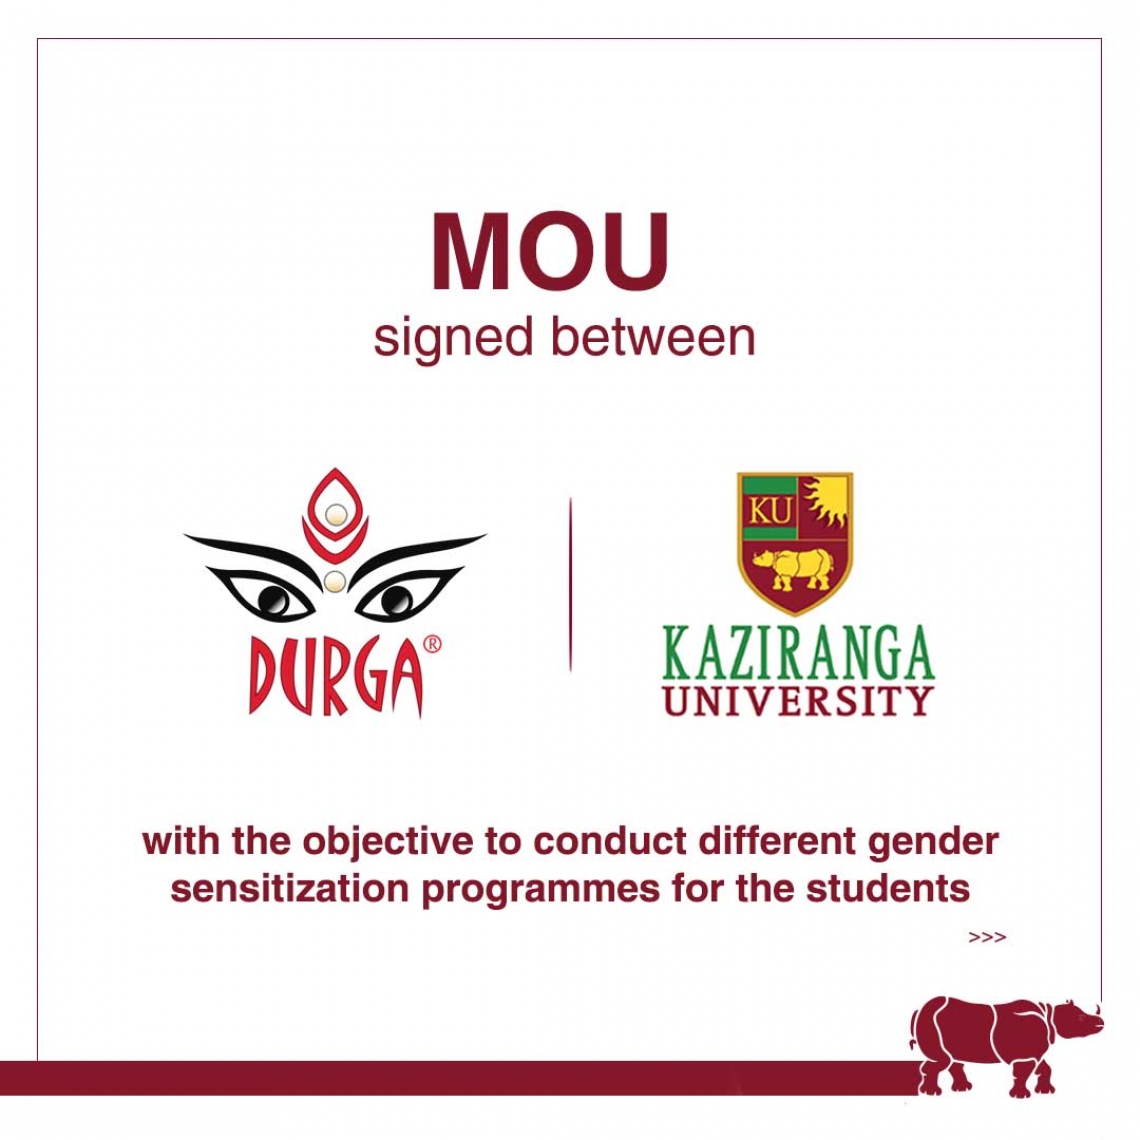 MoU signed between the Assam Kaziranga University and Durga India.